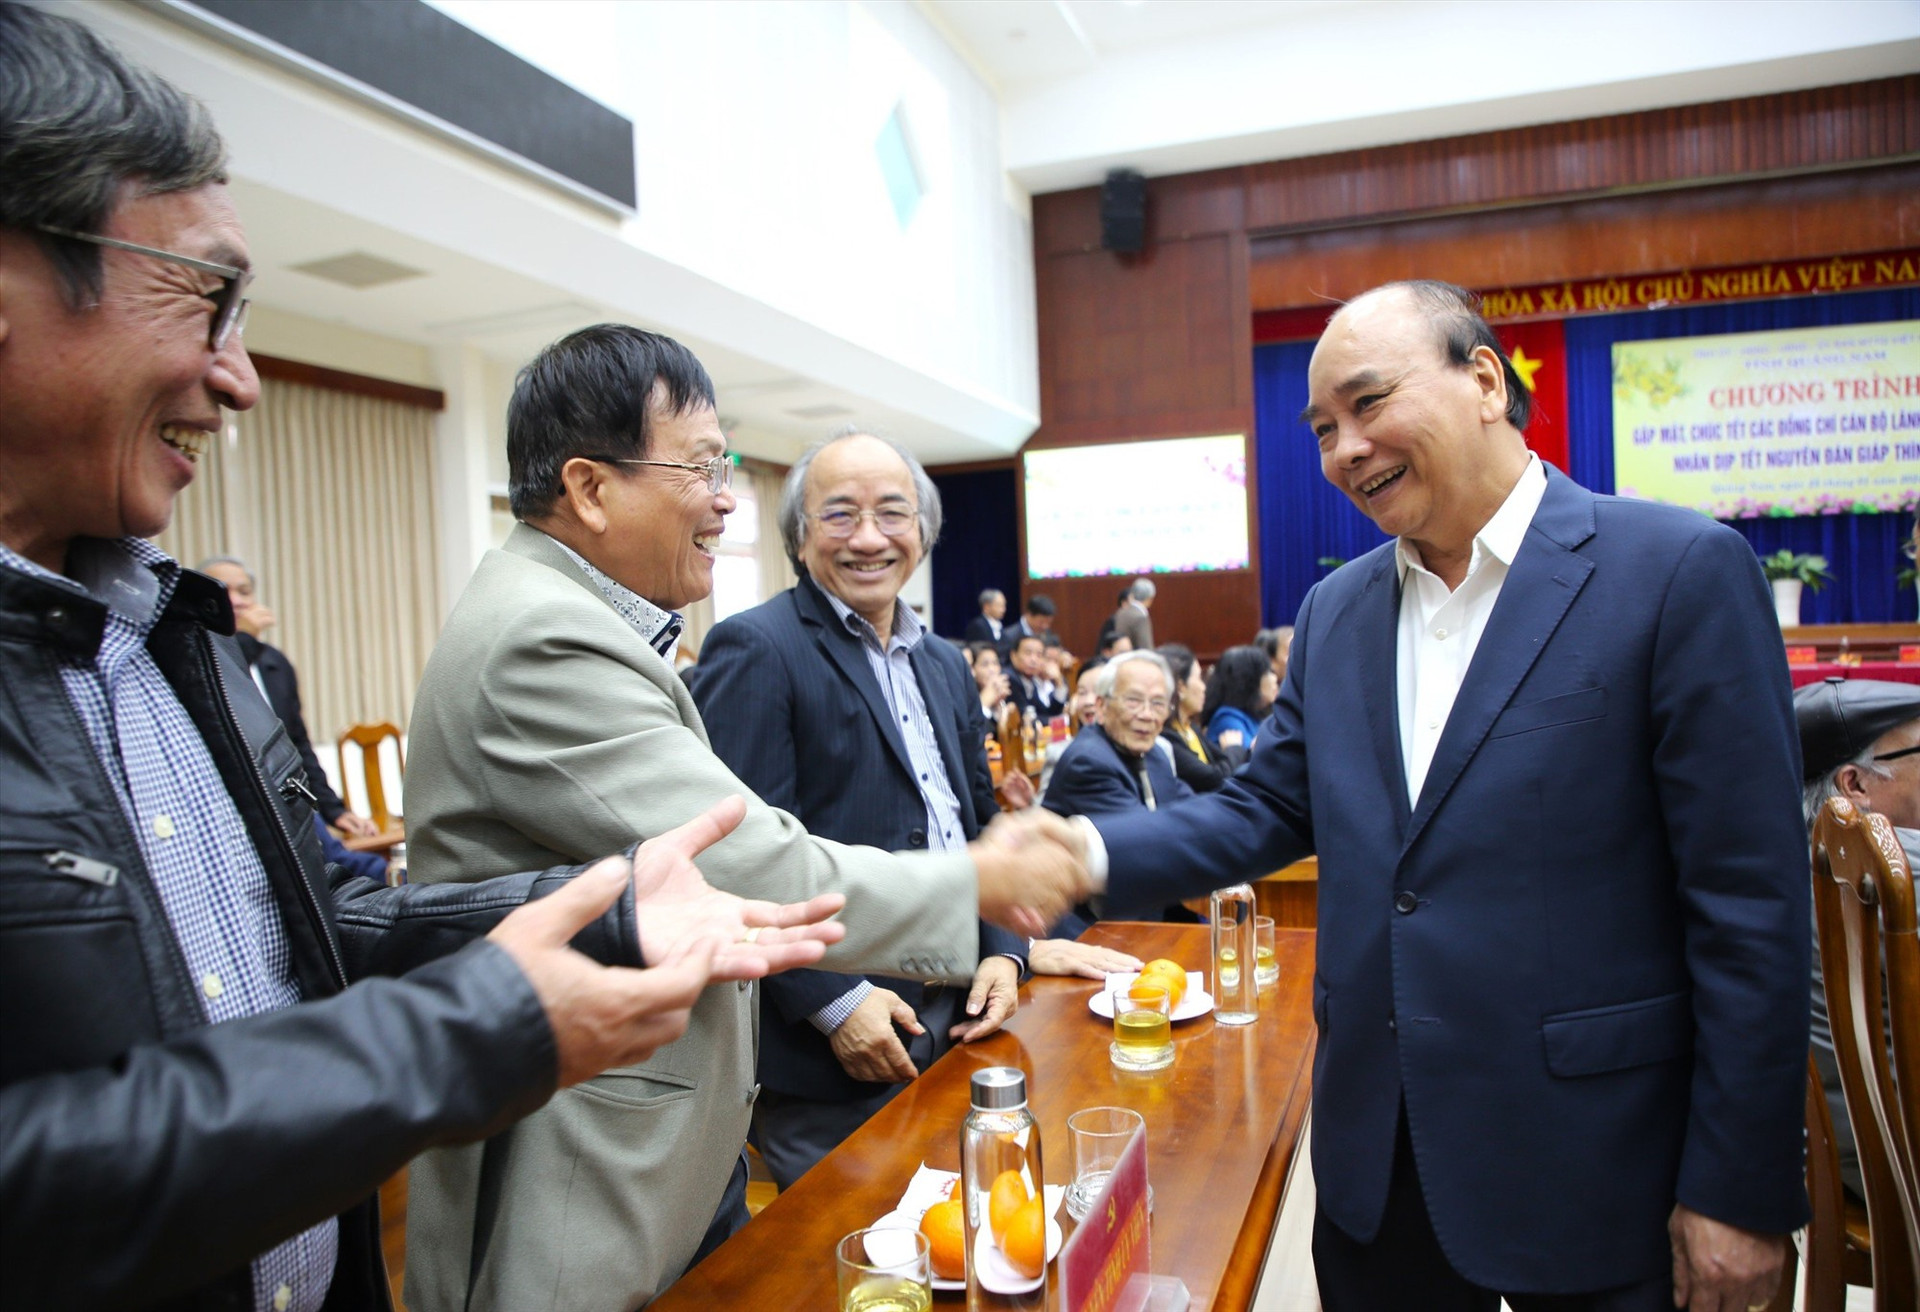 Nguyên Chủ tịch nước Nguyễn Xuân Phúc thăm hỏi cán bộ tỉnh nghỉ hưu tại chương trình gặp mặt. Ảnh: A.N